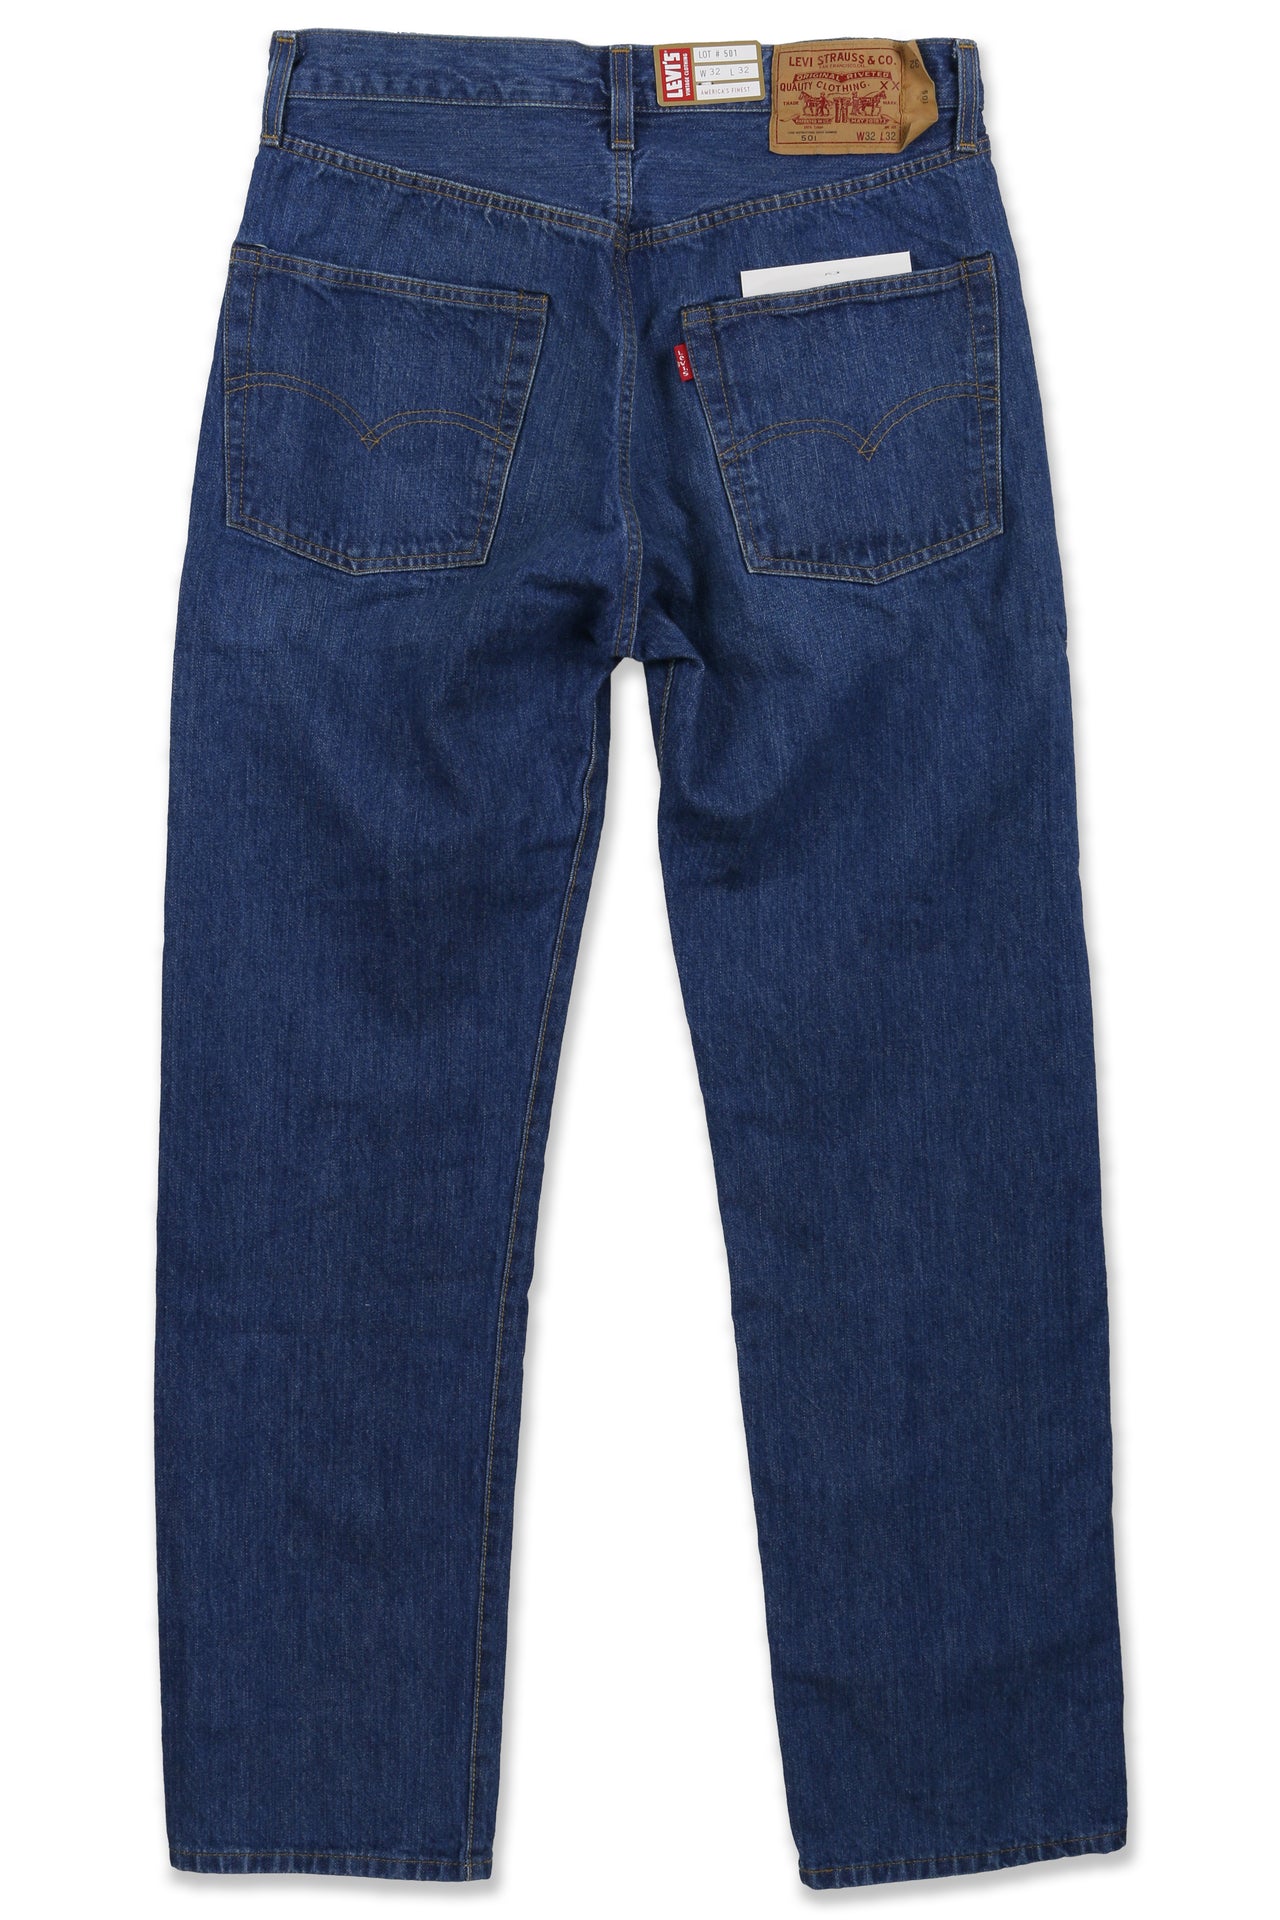 Levis Vintage 1976 501 Jeans – Hanon